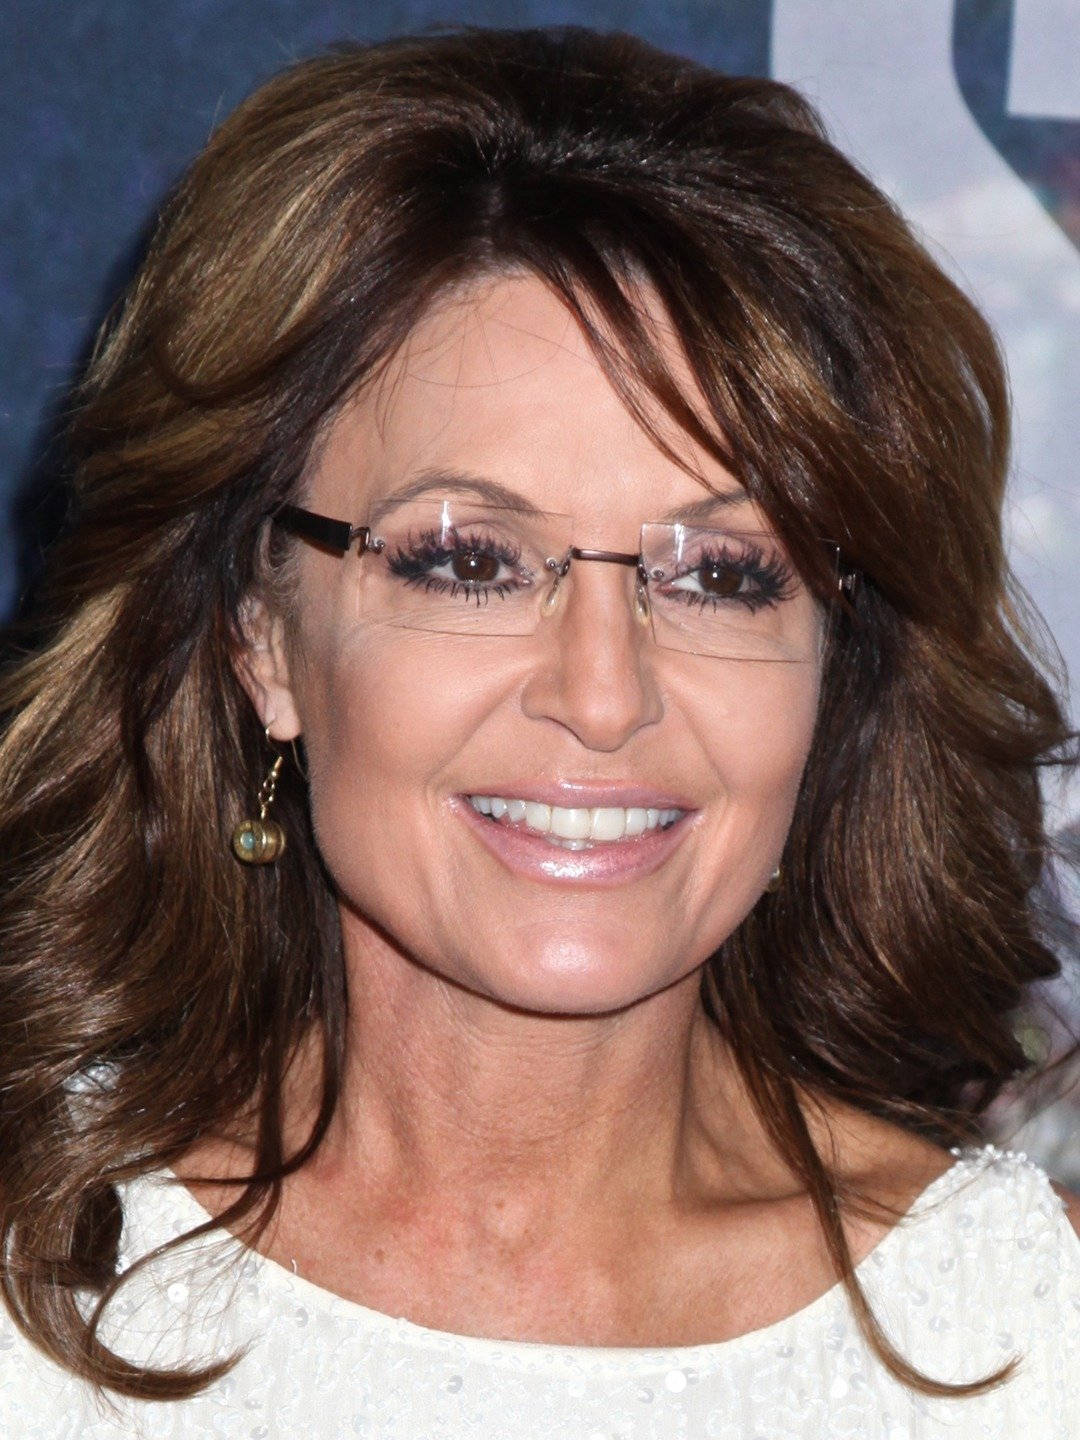 Sarah Palin In White Top Wallpaper